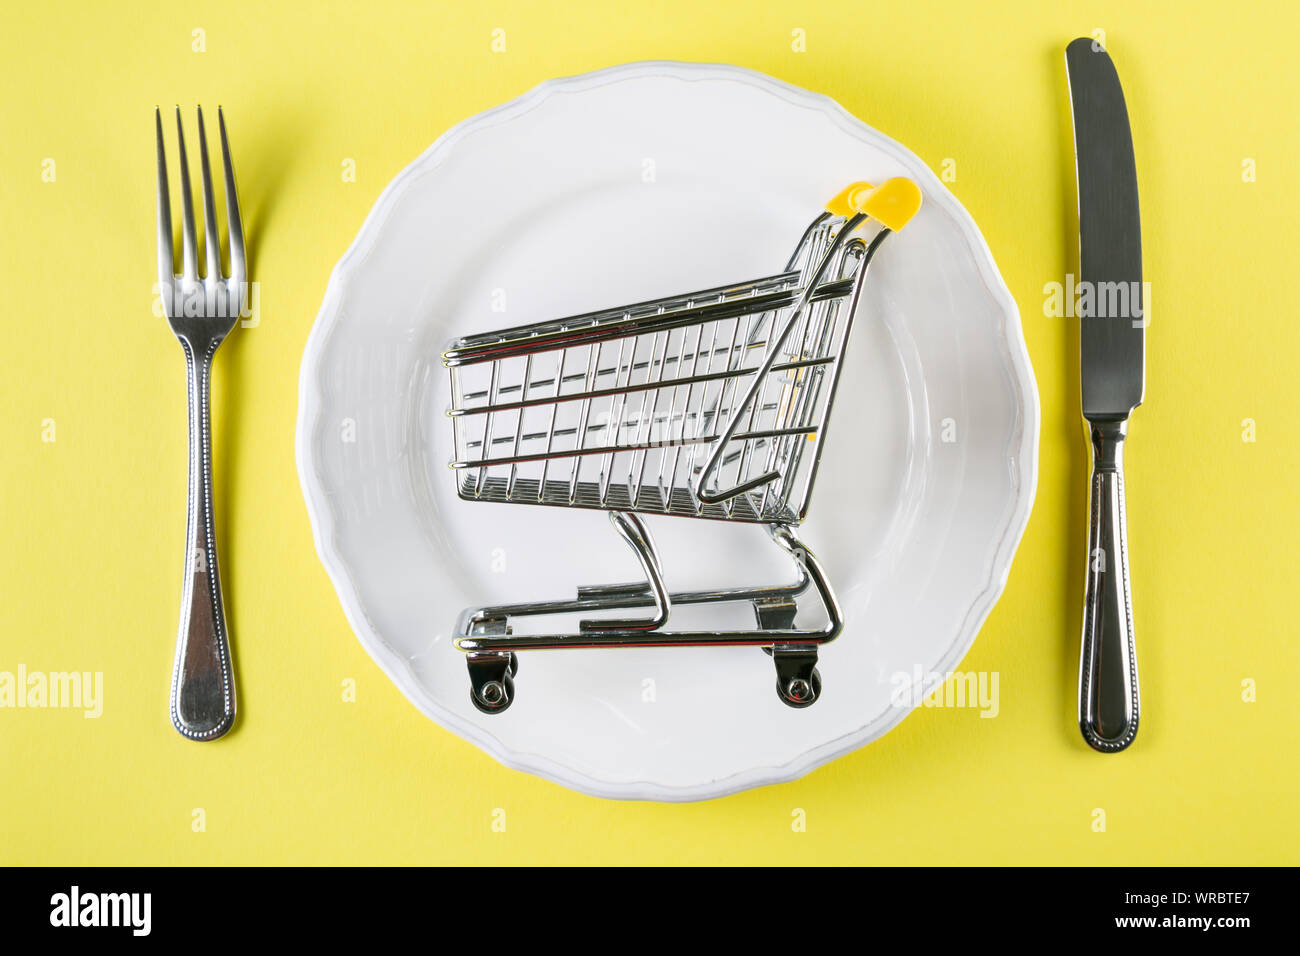 La cesta de alimentos vacíos en la placa blanca. Concepto de compras de supermercado, concepto de planificación de comidas semanales Foto de stock